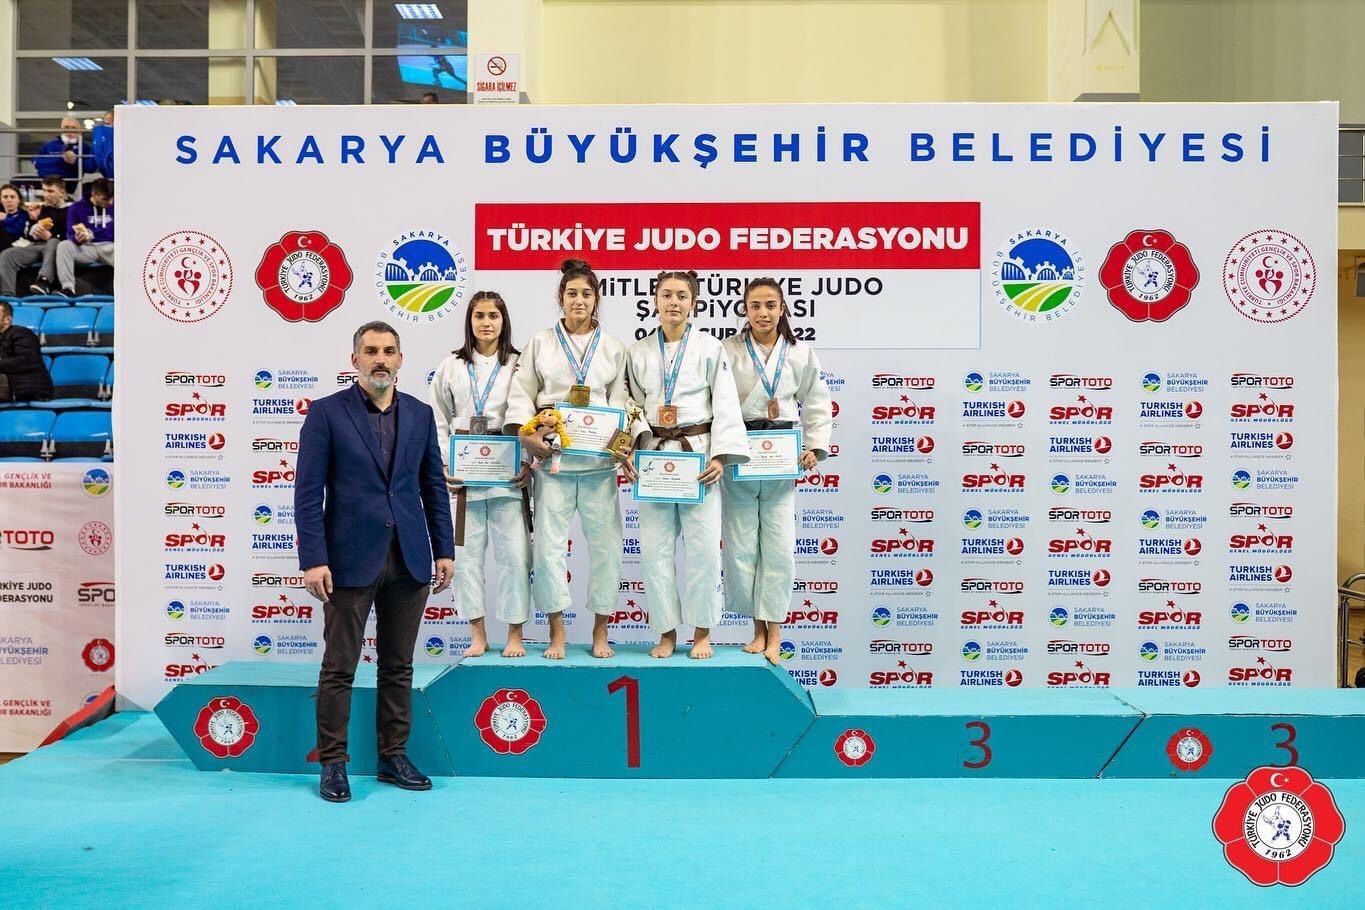 Kocaelili judocular turnuvadan başarıyla döndü #kocaeli